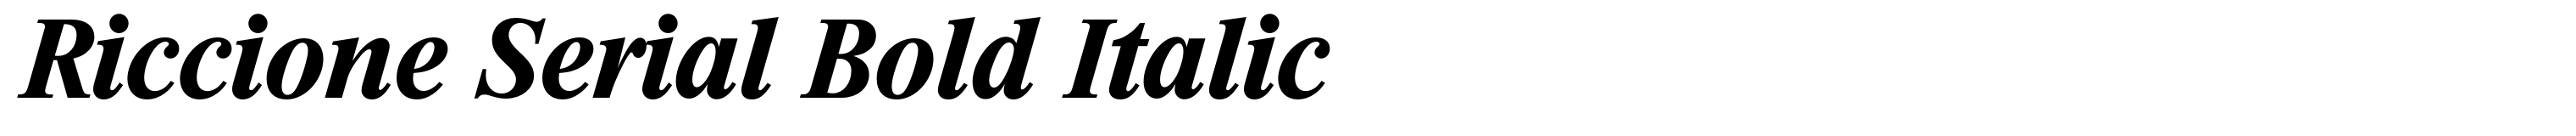 Riccione Serial Bold Italic